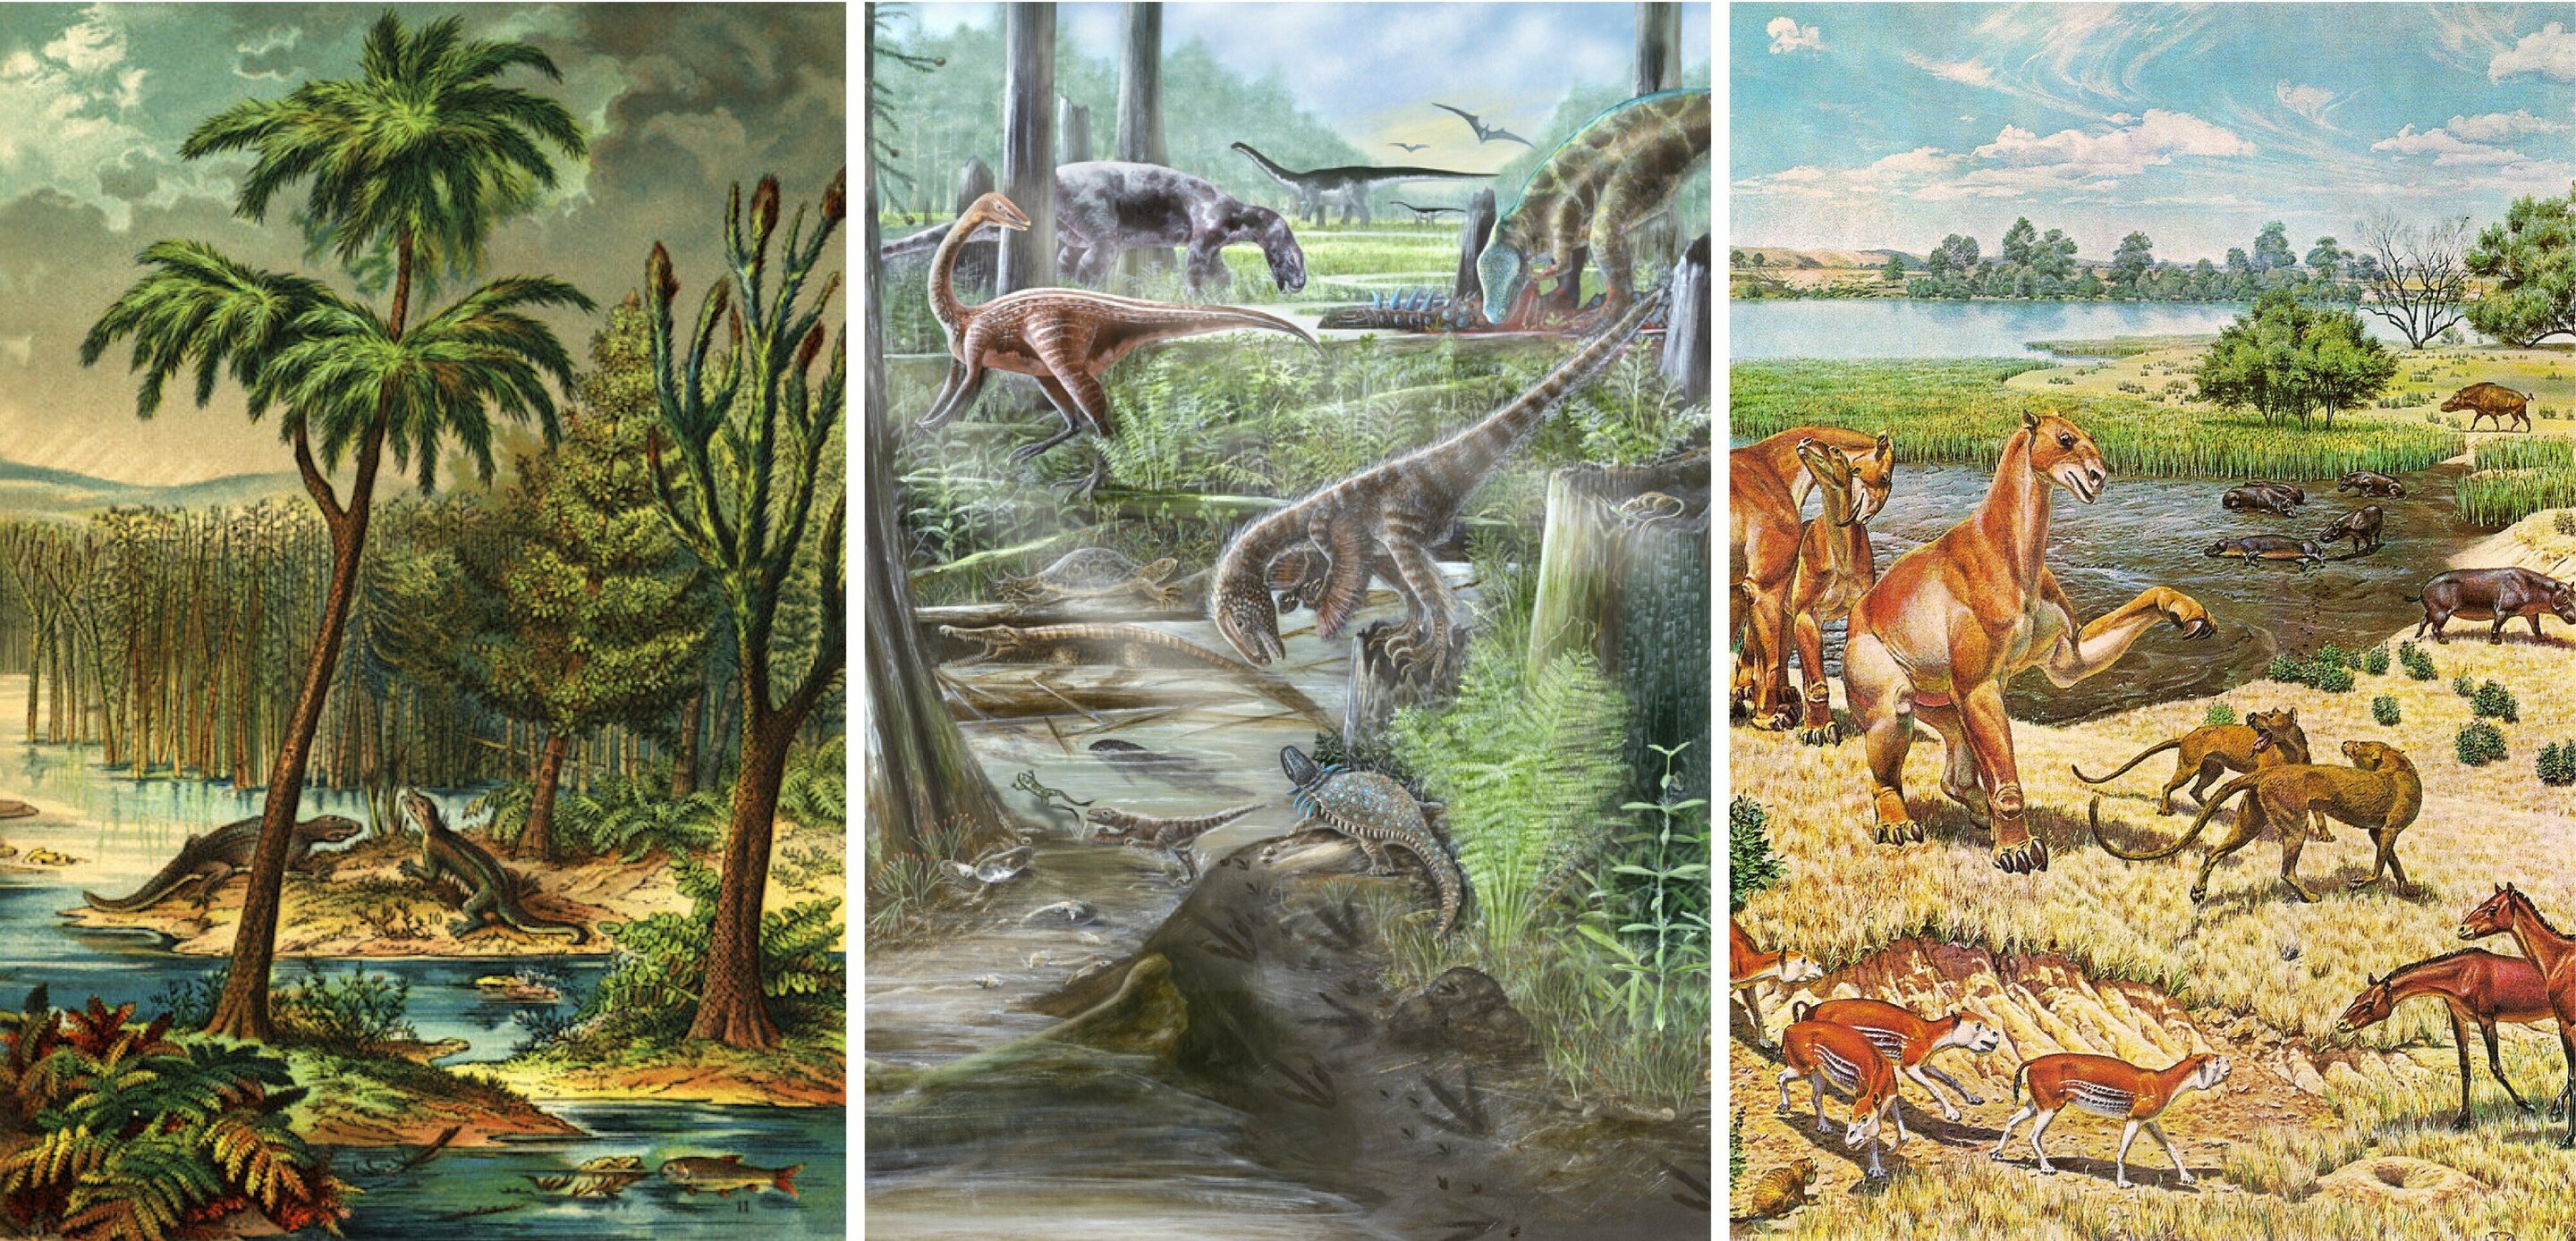 La diversidad de la vida en la Tierra no ha cambiado desde la época de los dinosaurios